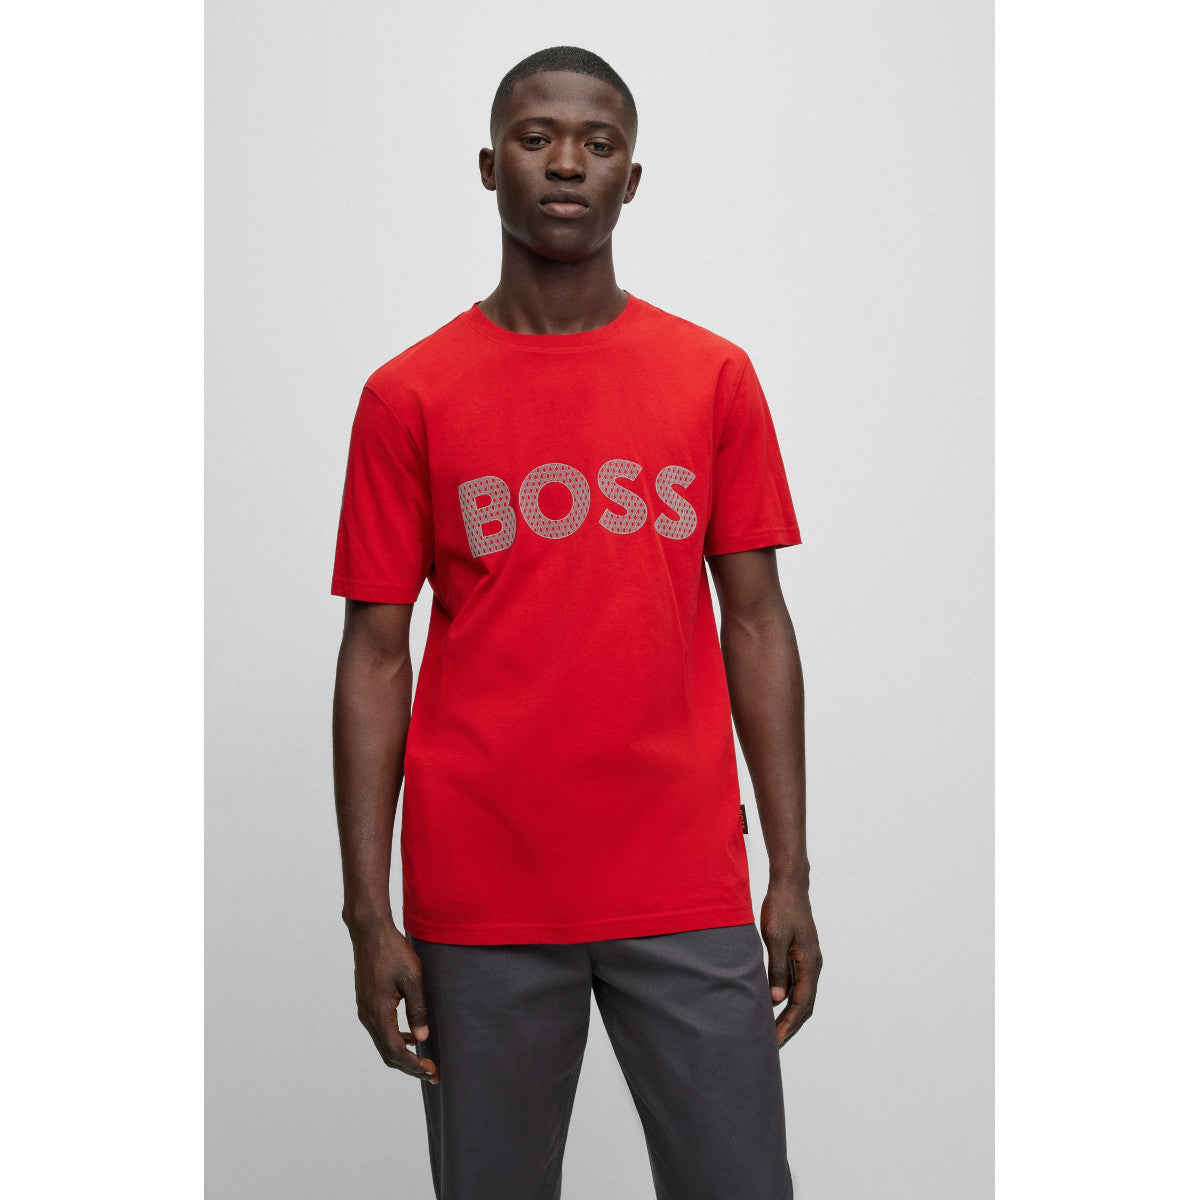 BOSS Orange TeeBOSSRete T-Shirt 624 Bright Red